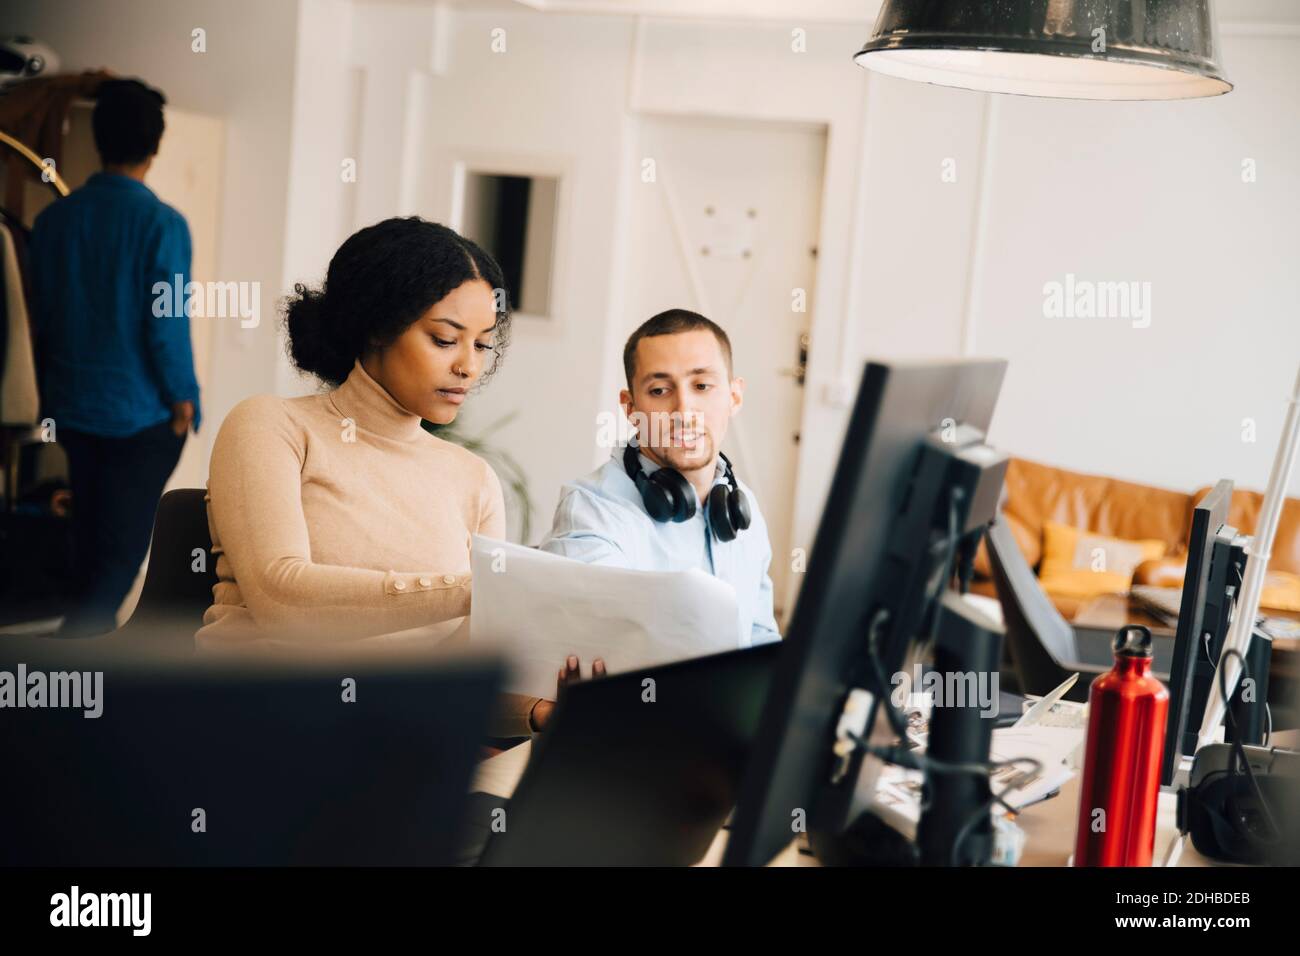 Weibliche Computerhackerin, die dem männlichen Kollegen während des Sitzens ein Dokument vorführt Im Büro Stockfoto